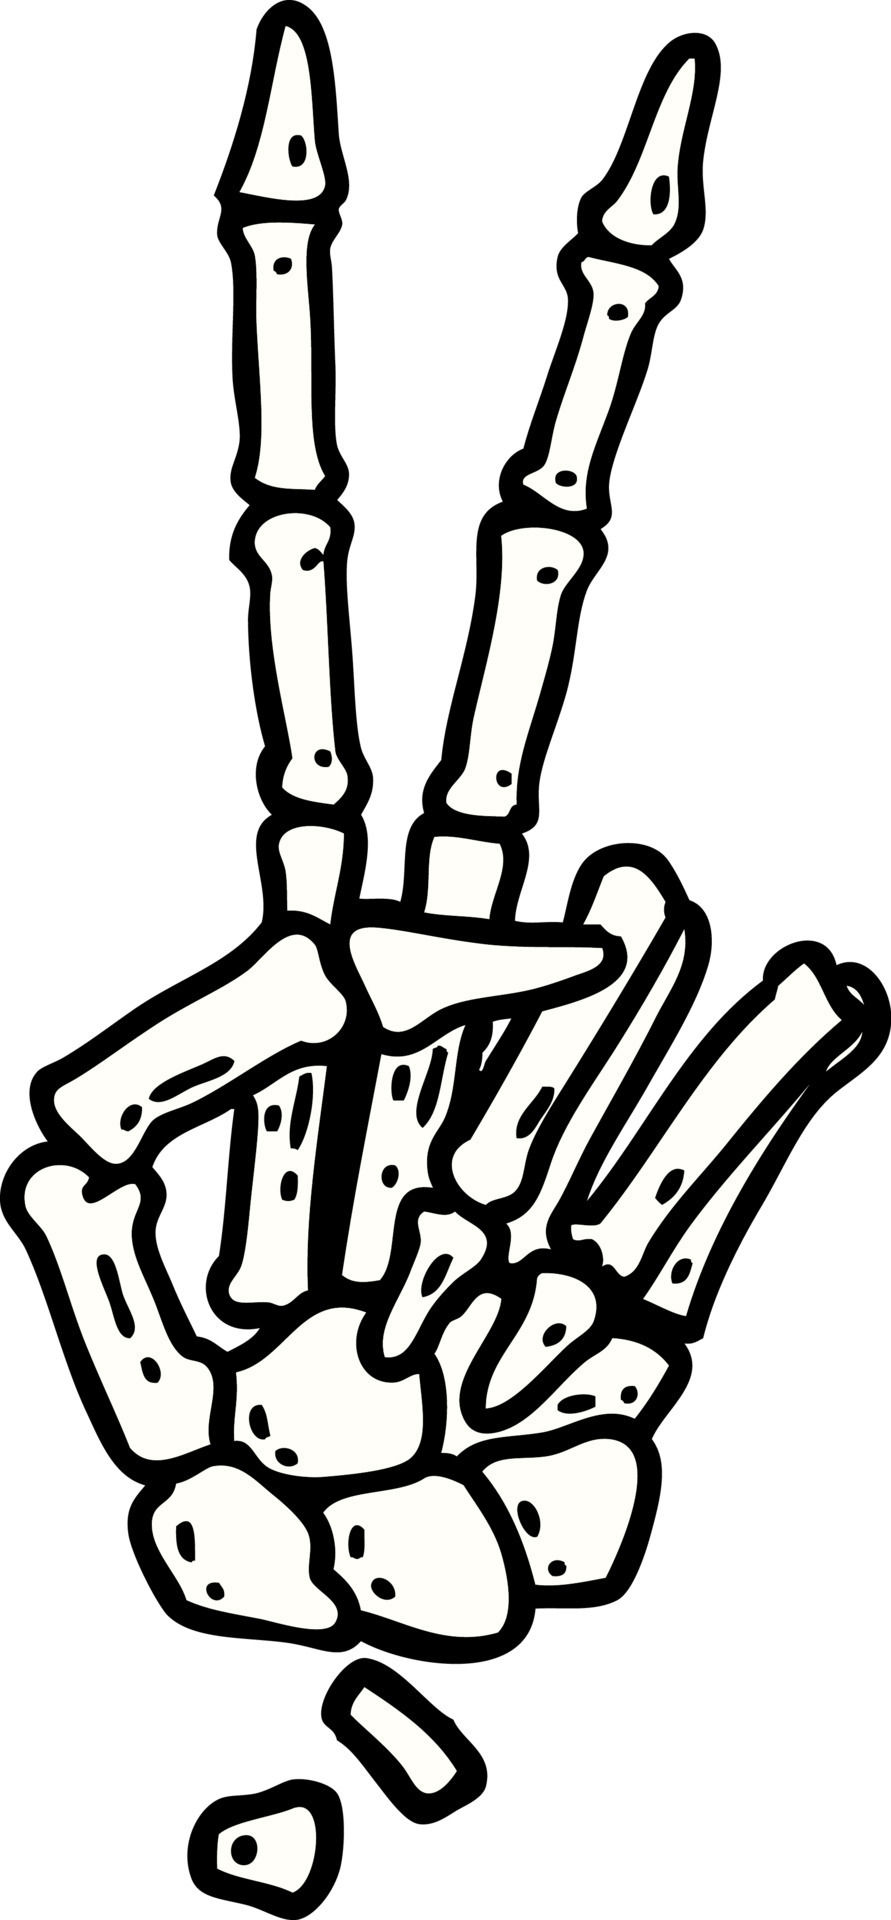 Minimalist peace symbol tattoo on the finger.